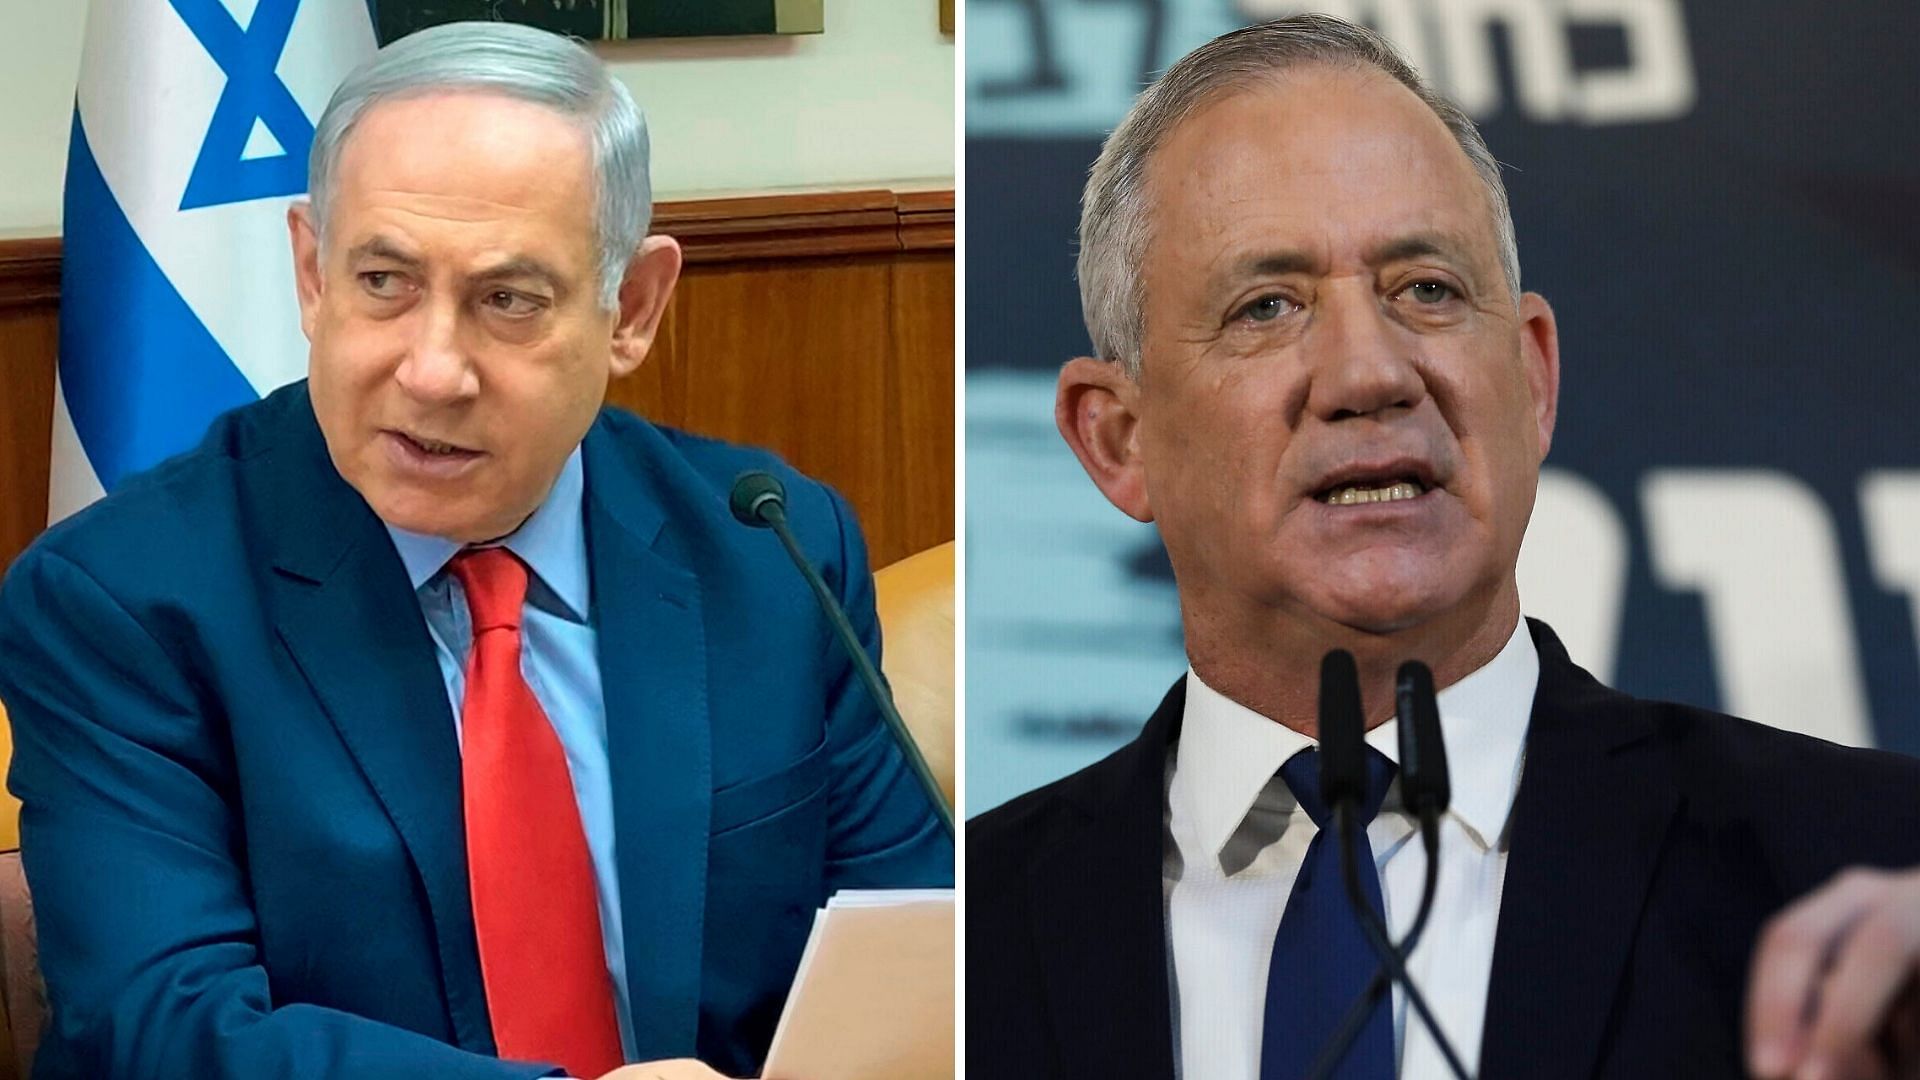 Israel Prime Minister Benjamin Netanyahu; Israeli opposition leader Benny Gantz